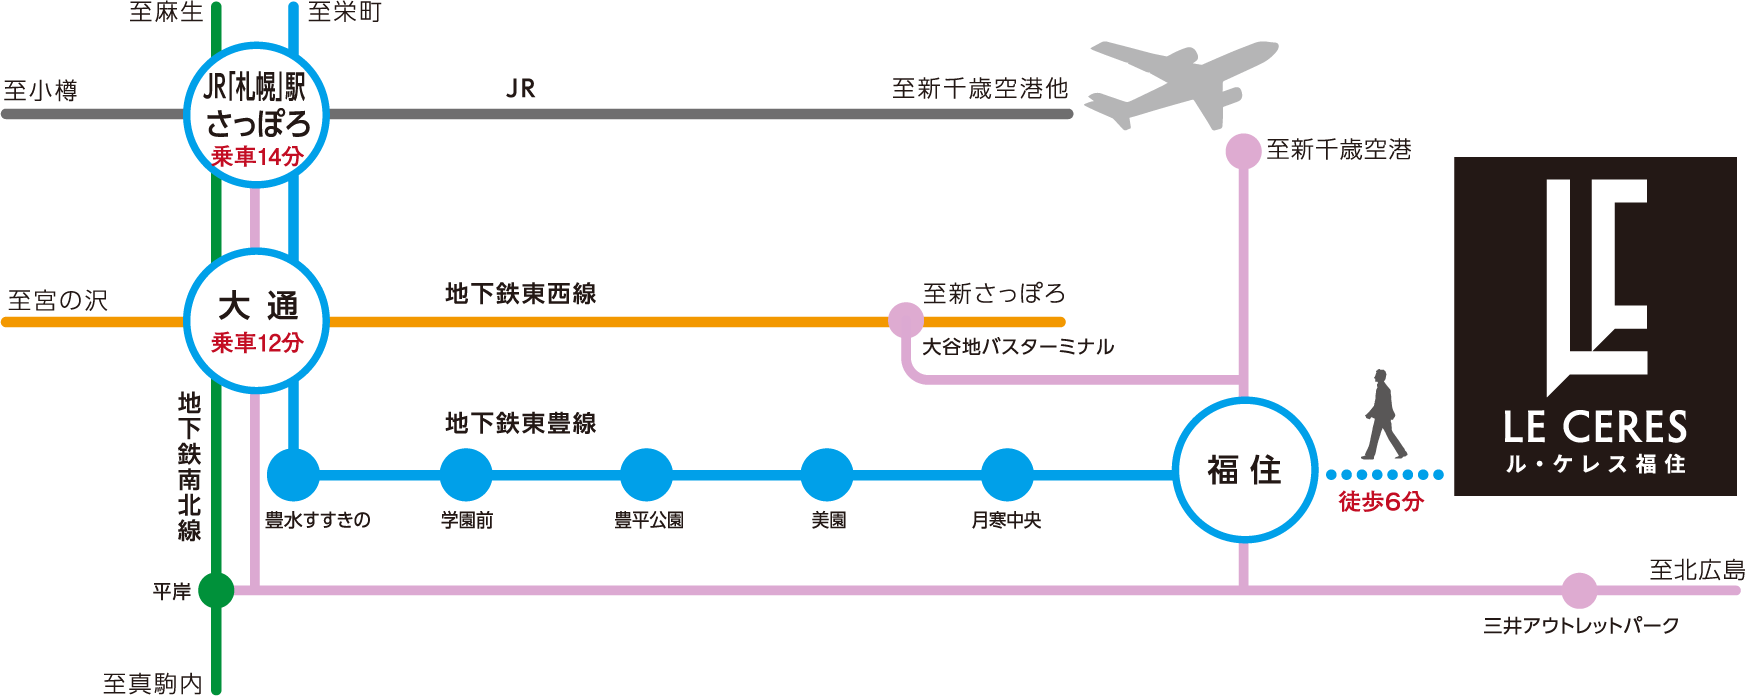 JRと市営地下鉄の路線図